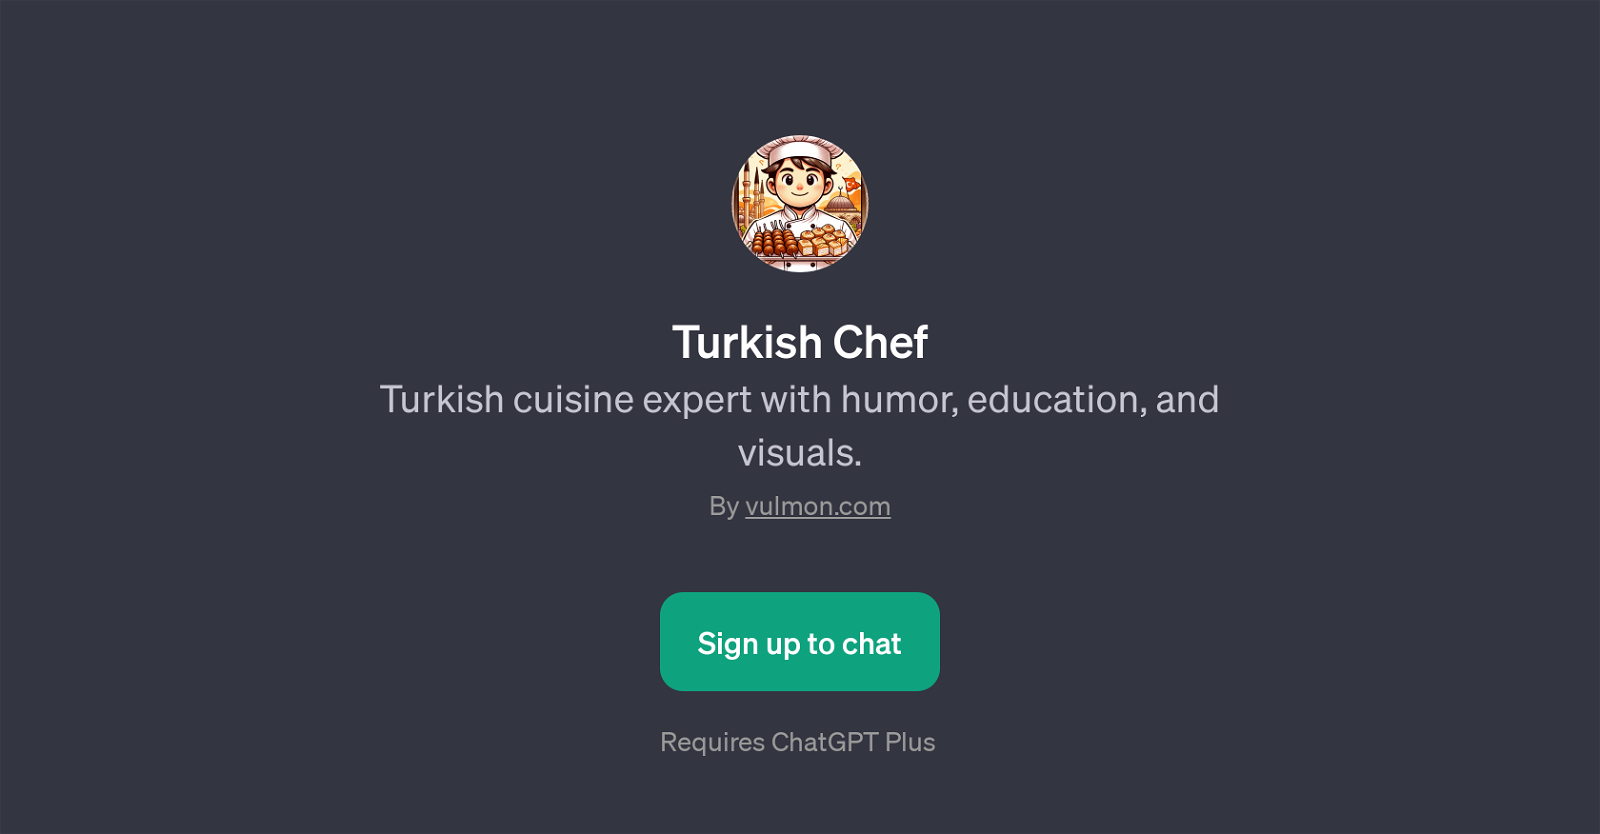 Turkish Chef website